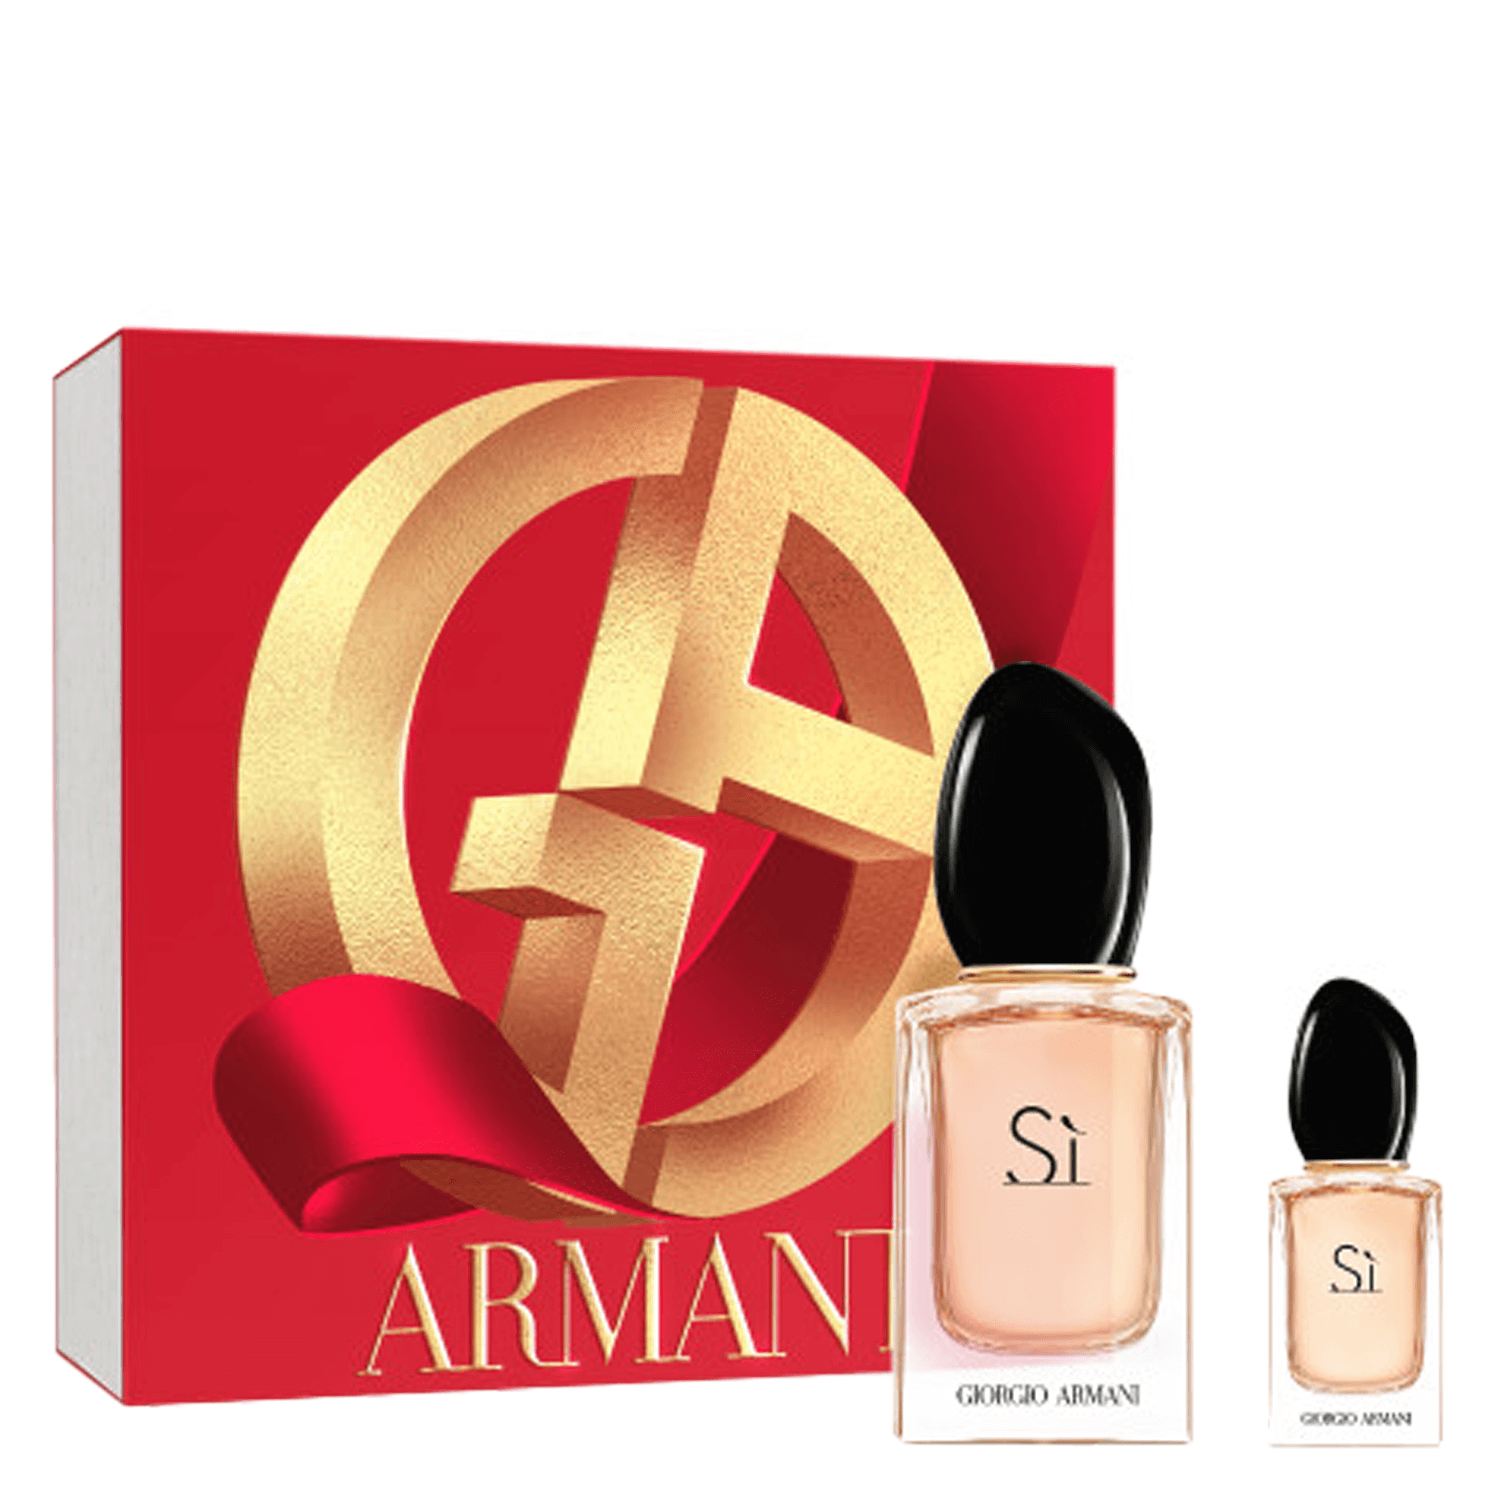 Product image from Sì - Eau de Parfum + mini Eau de Parfum Set